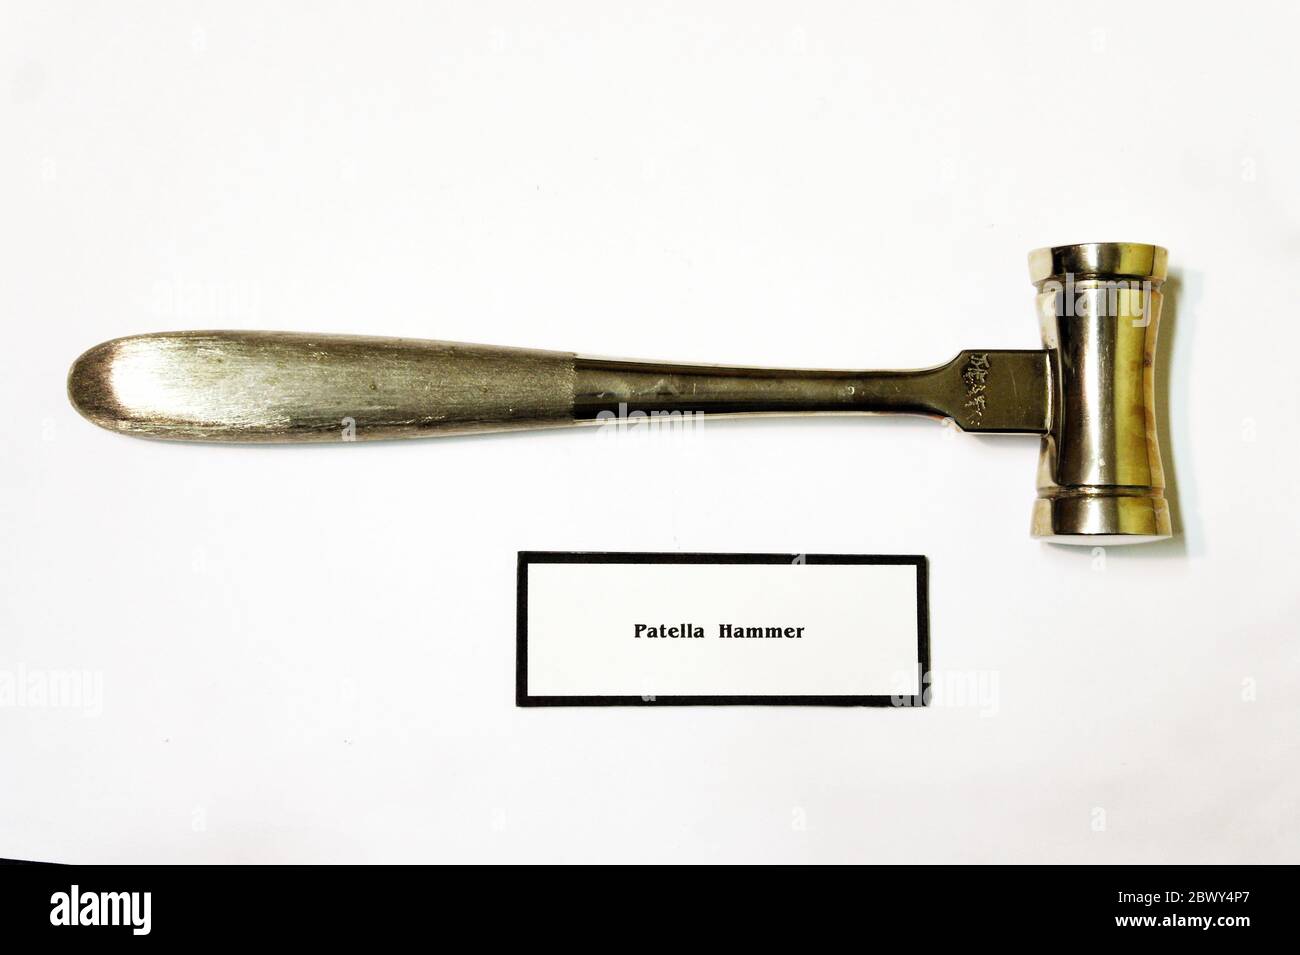 Ein alter Patella Hammer, der von Ärzten verwendet wird, um tiefe Sehnenreflexe zu testen. Stockfoto